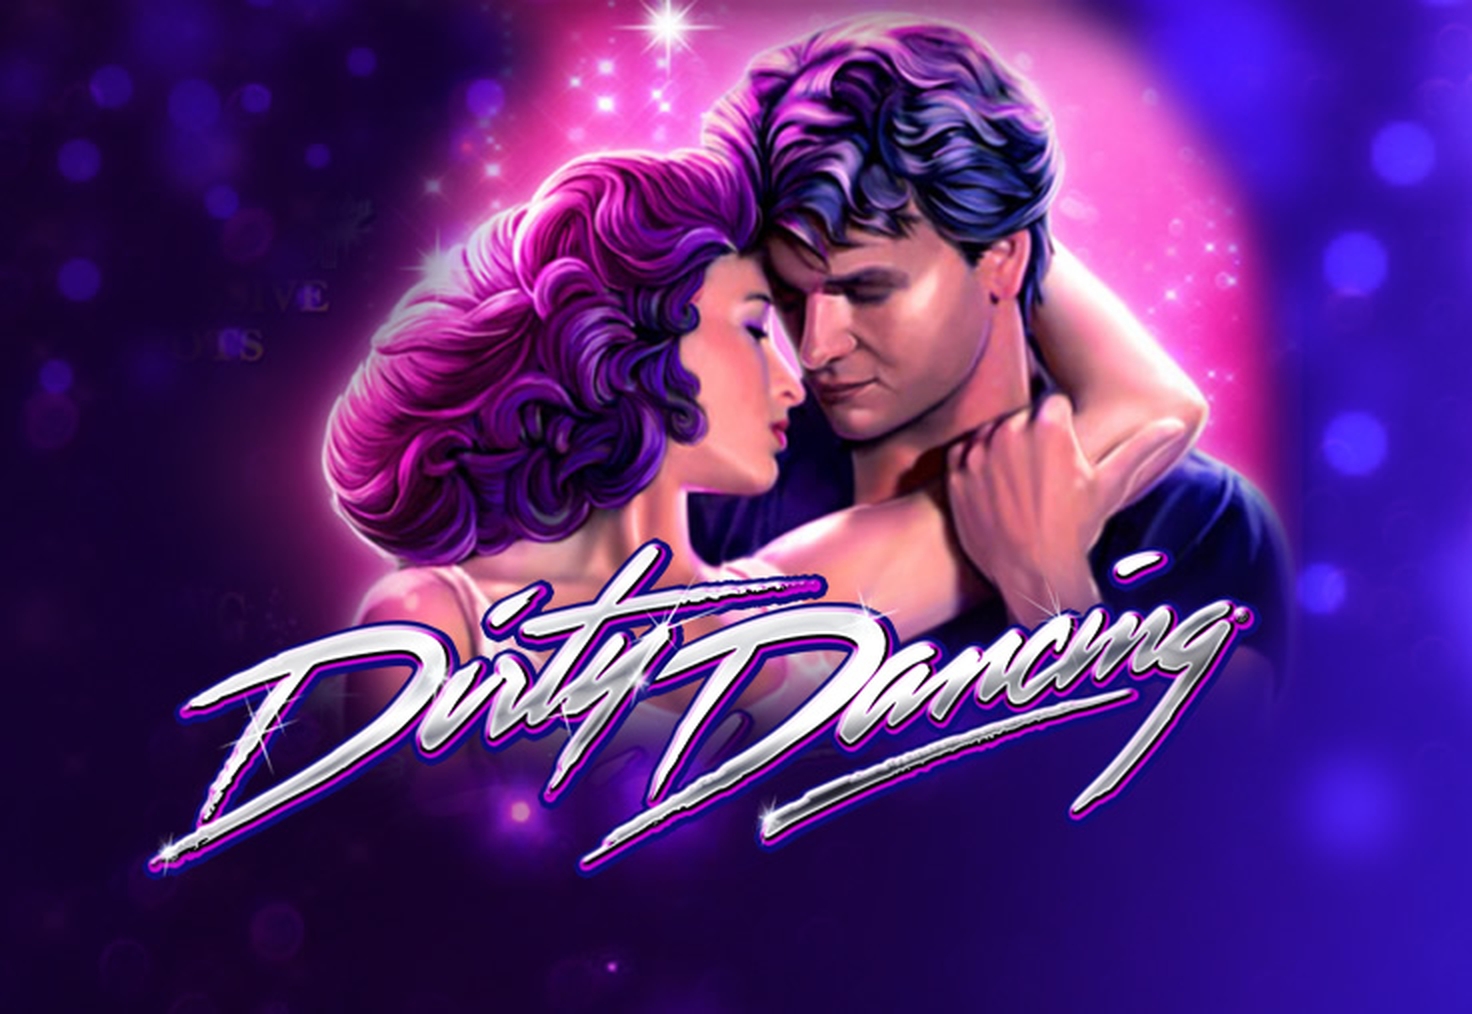 Dirty Dancing demo